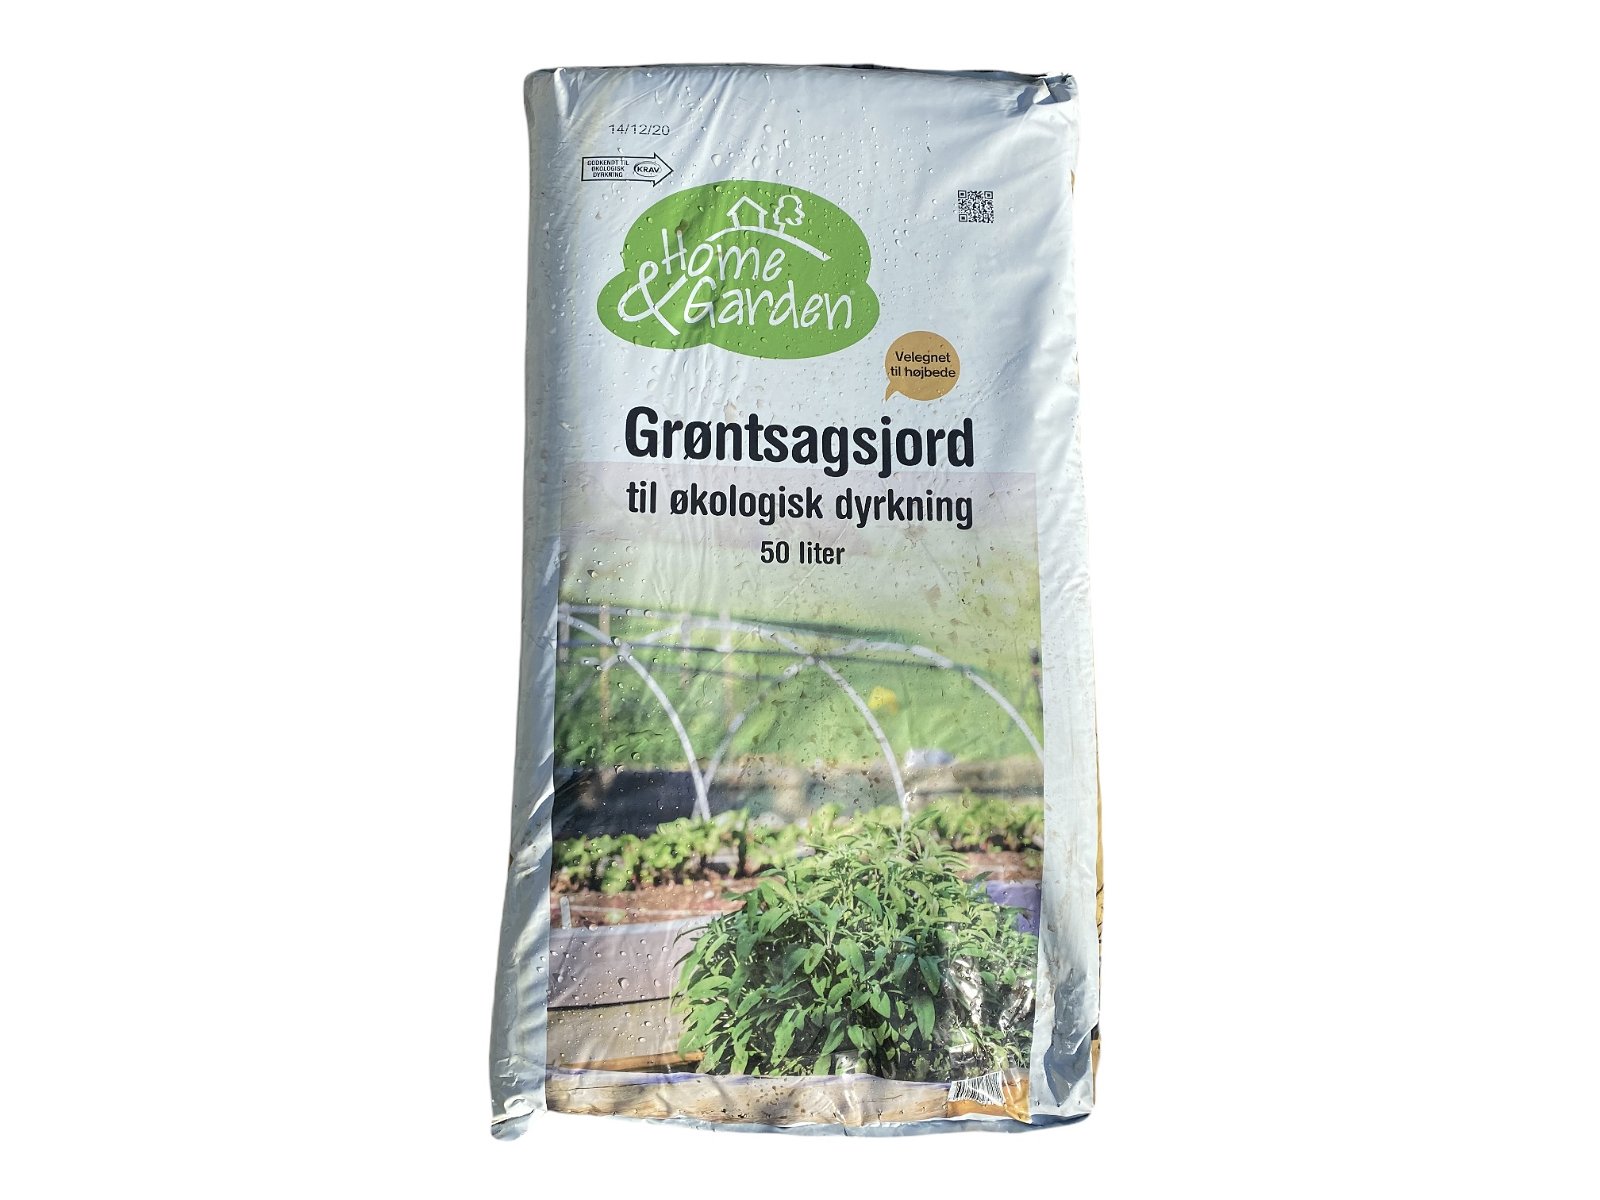 Home & Garden - Grøntsagsjord - 50 Liter